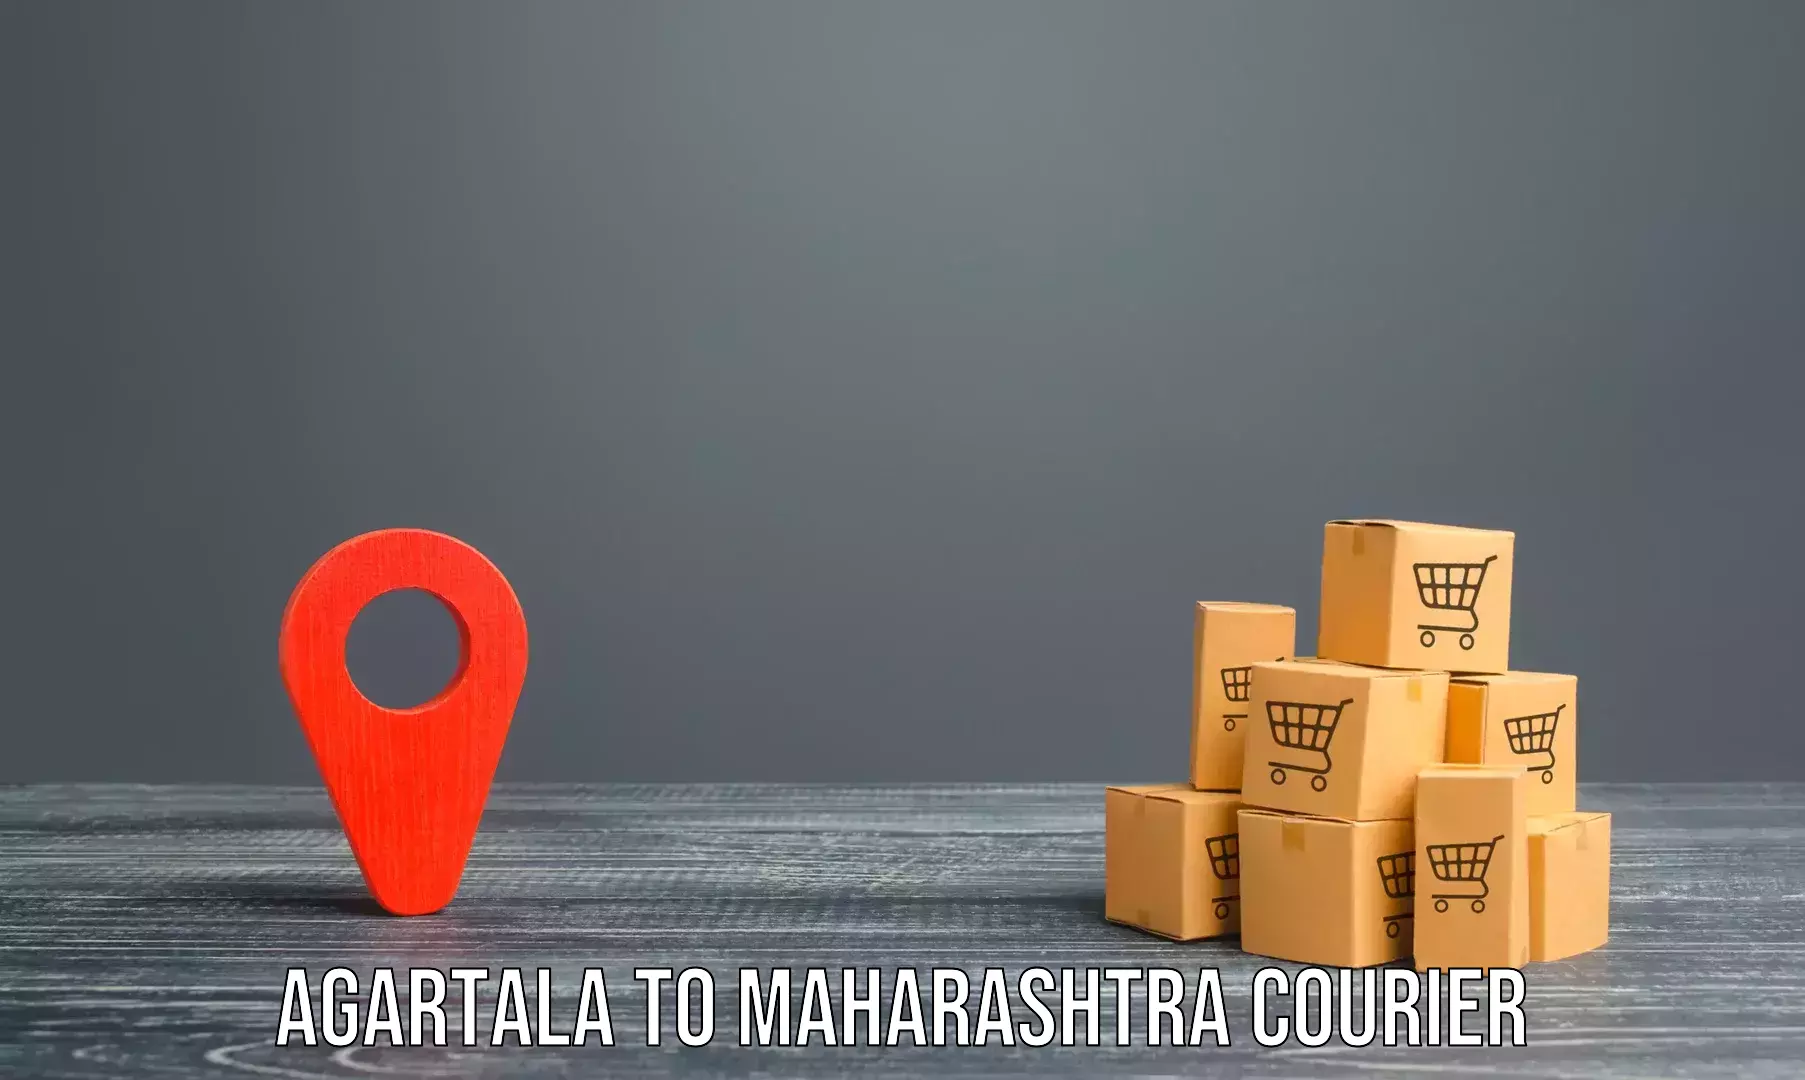 Professional moving company Agartala to Mahad